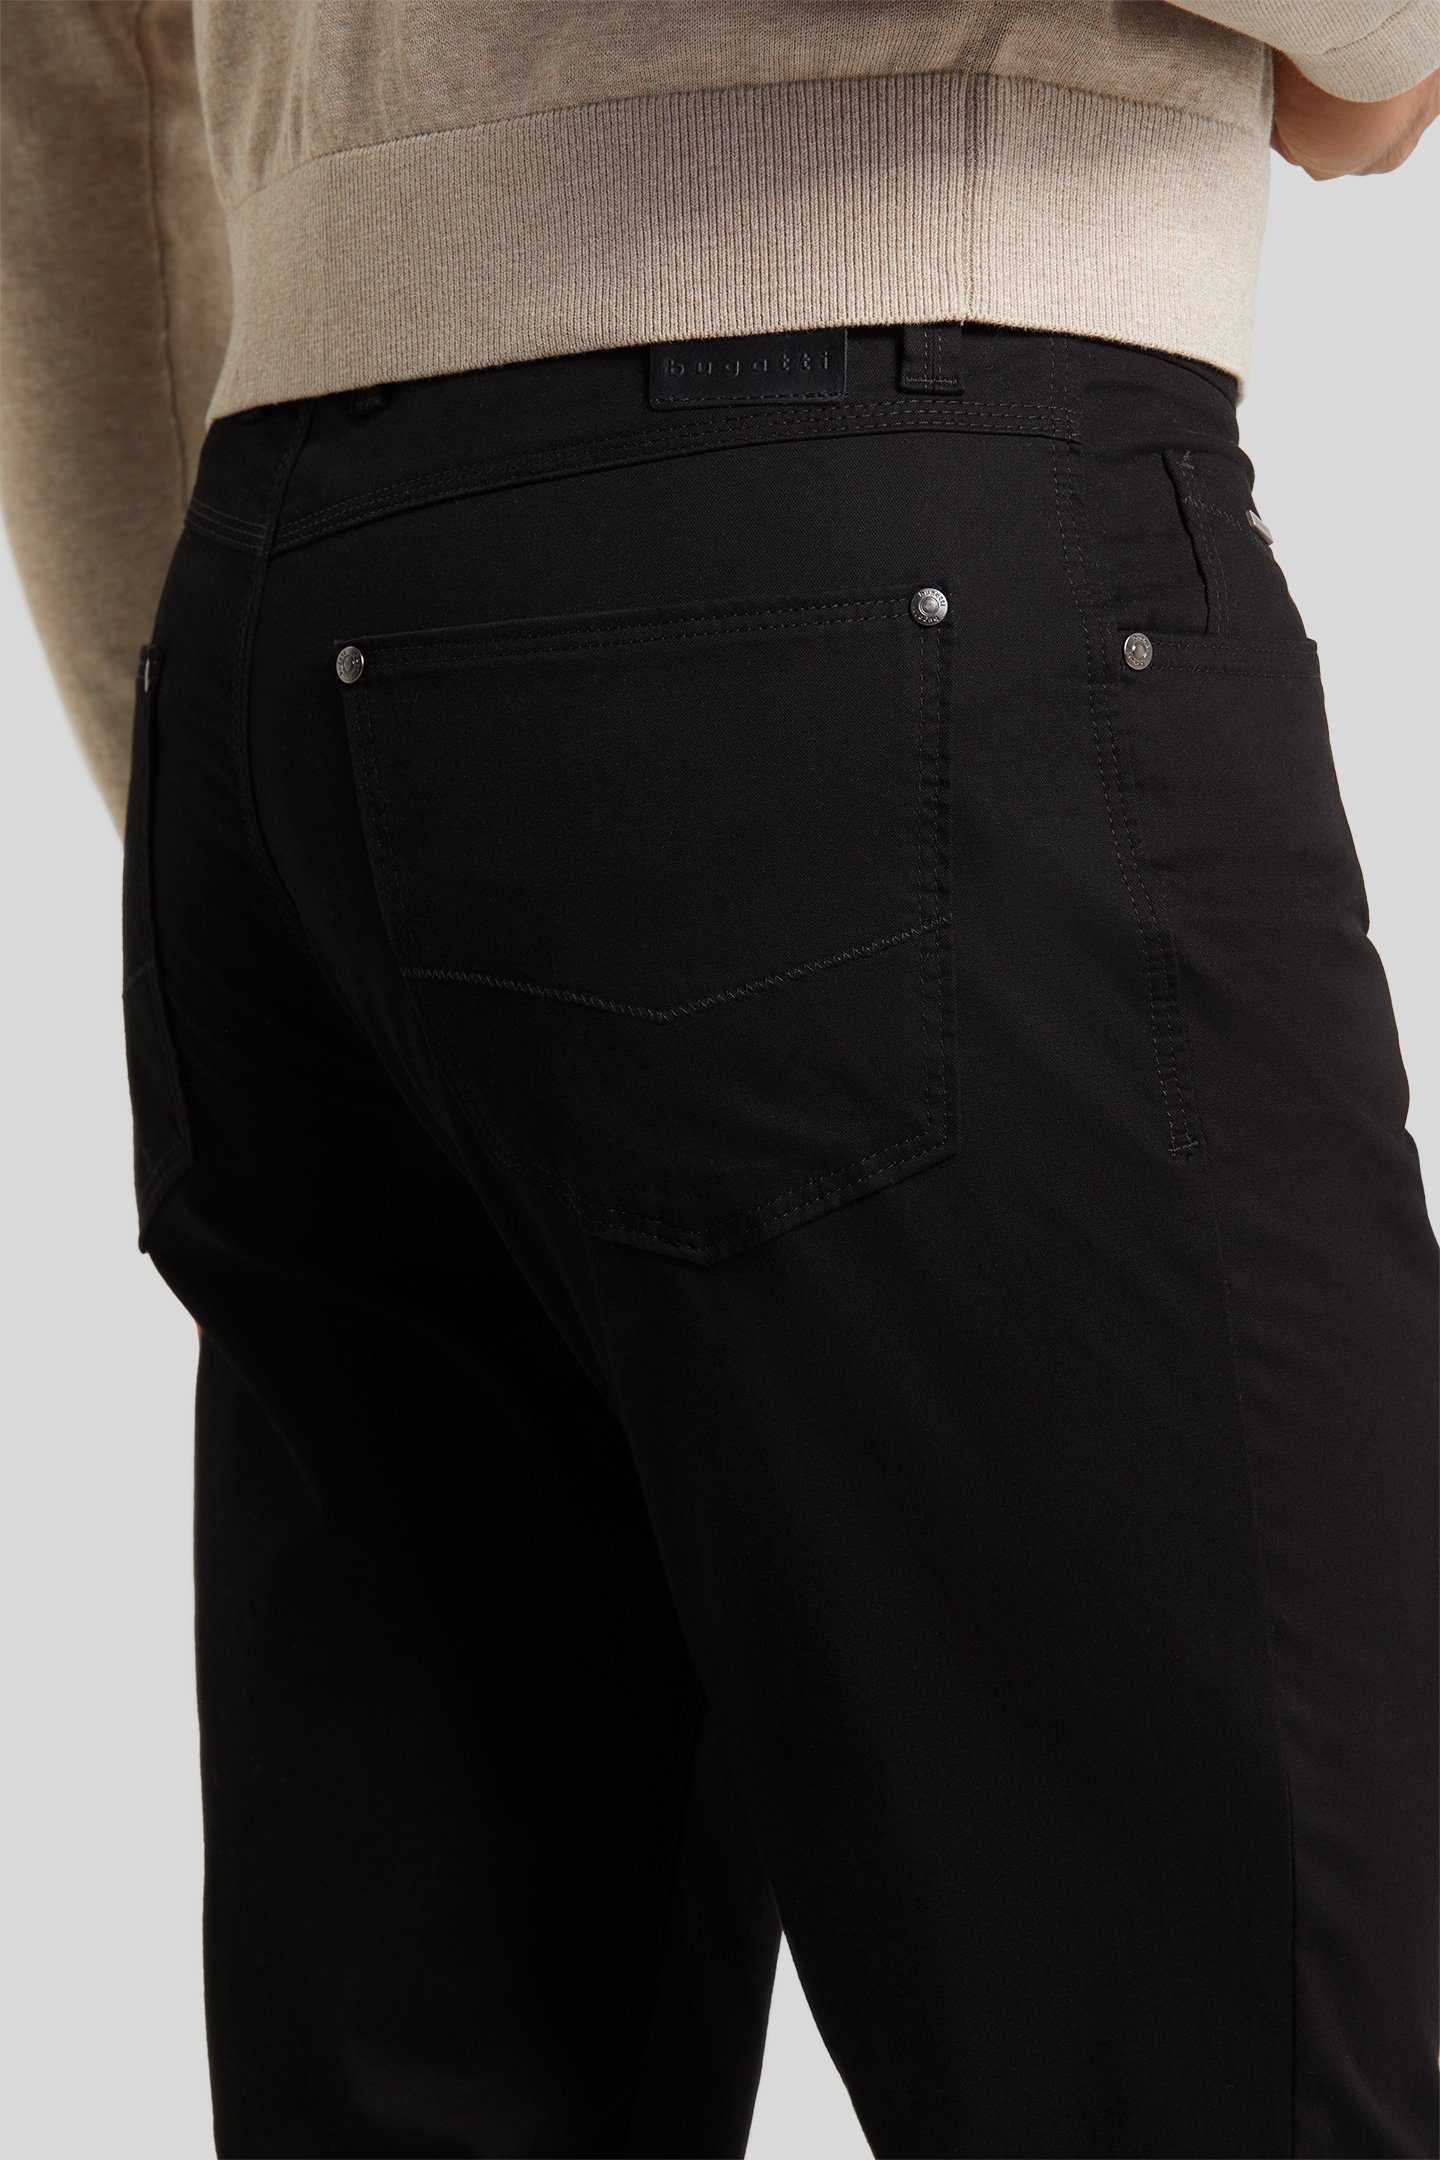 mit schwarz 5-Pocket-Hose bugatti langanhaltender Farbechtheit